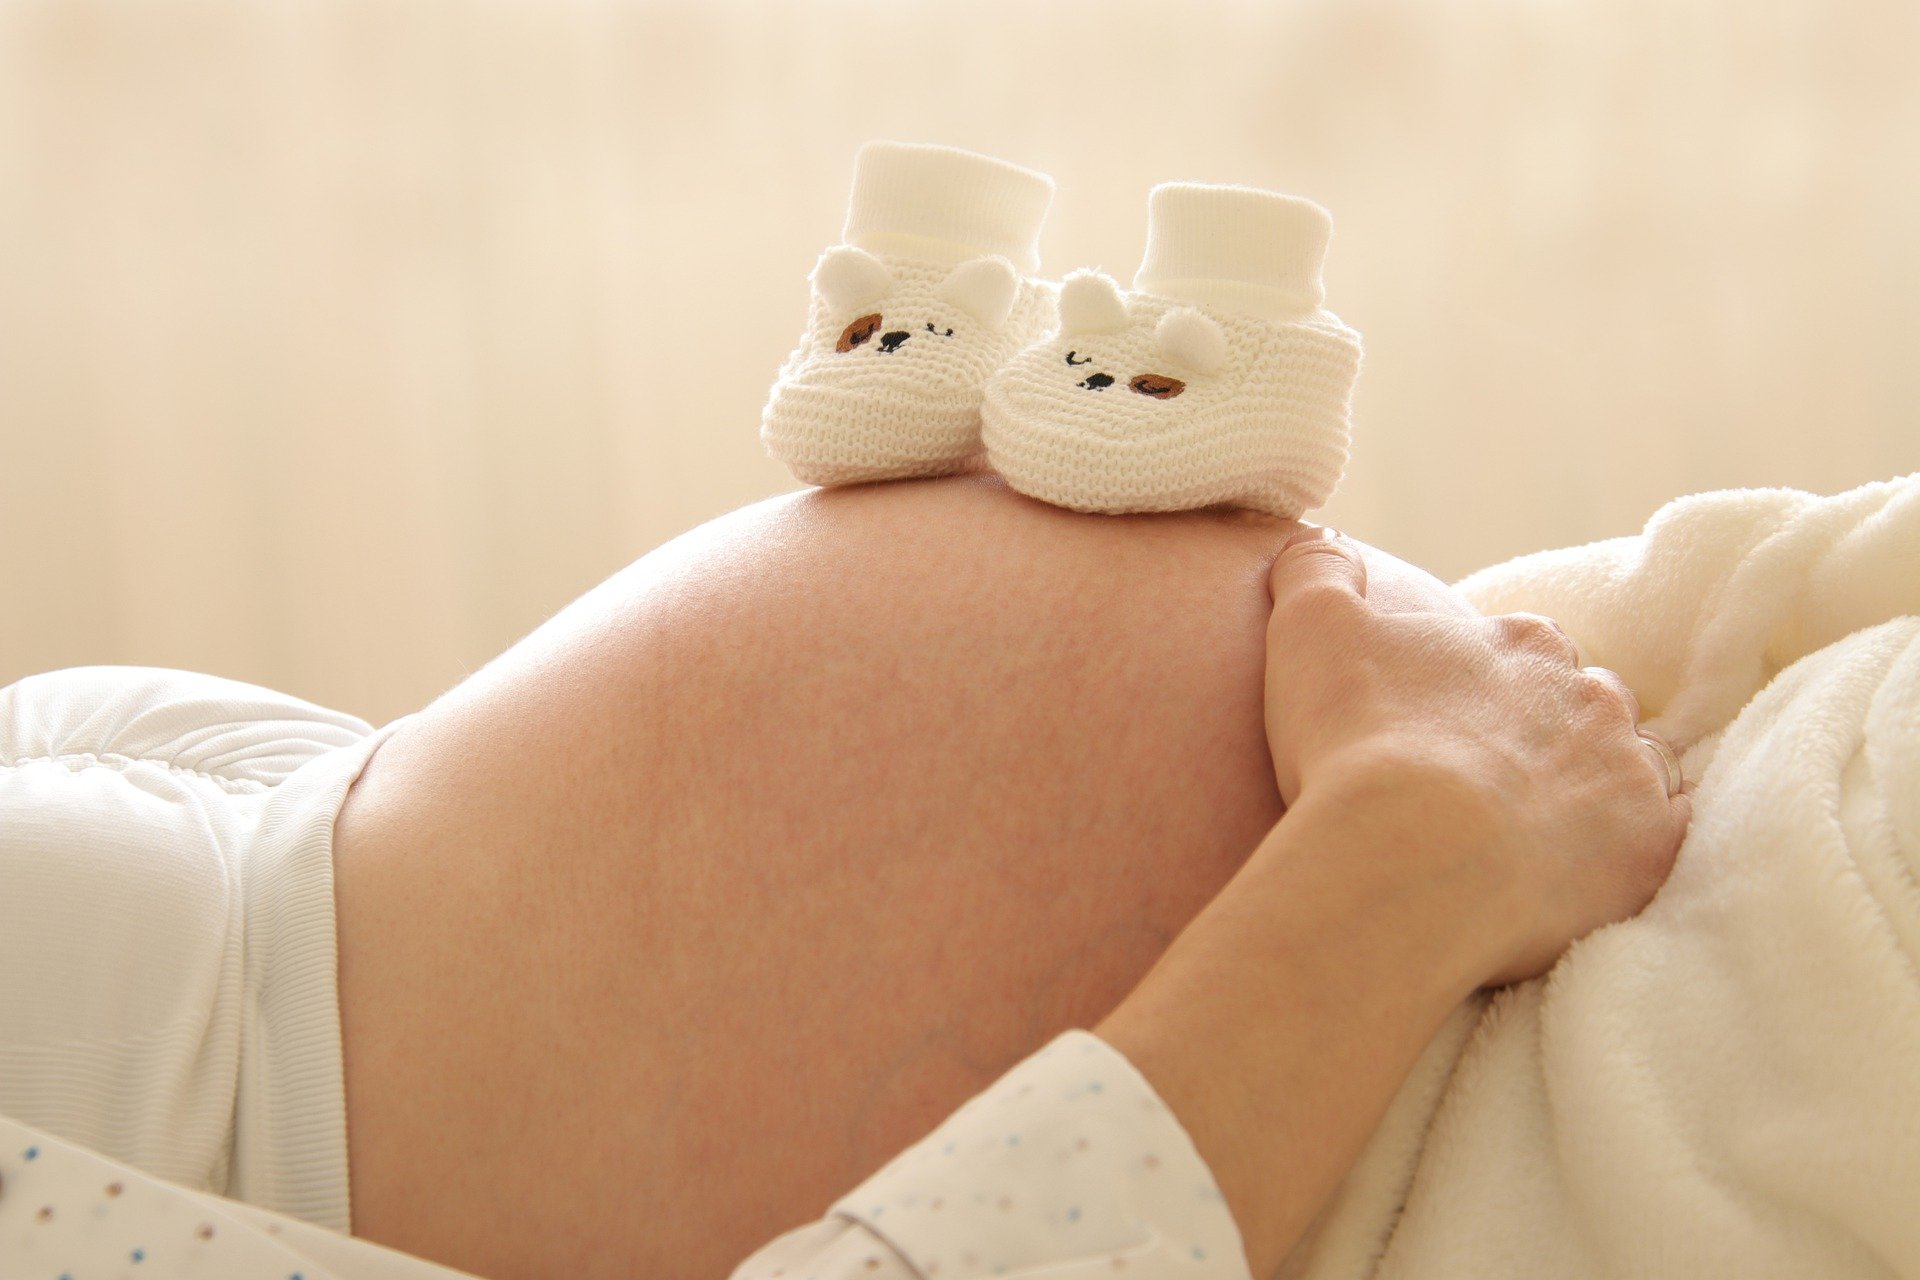 Após se descobrir grávida, a mulher deve pesquisar por partos alternativos para dar à luz e planejar seu parto